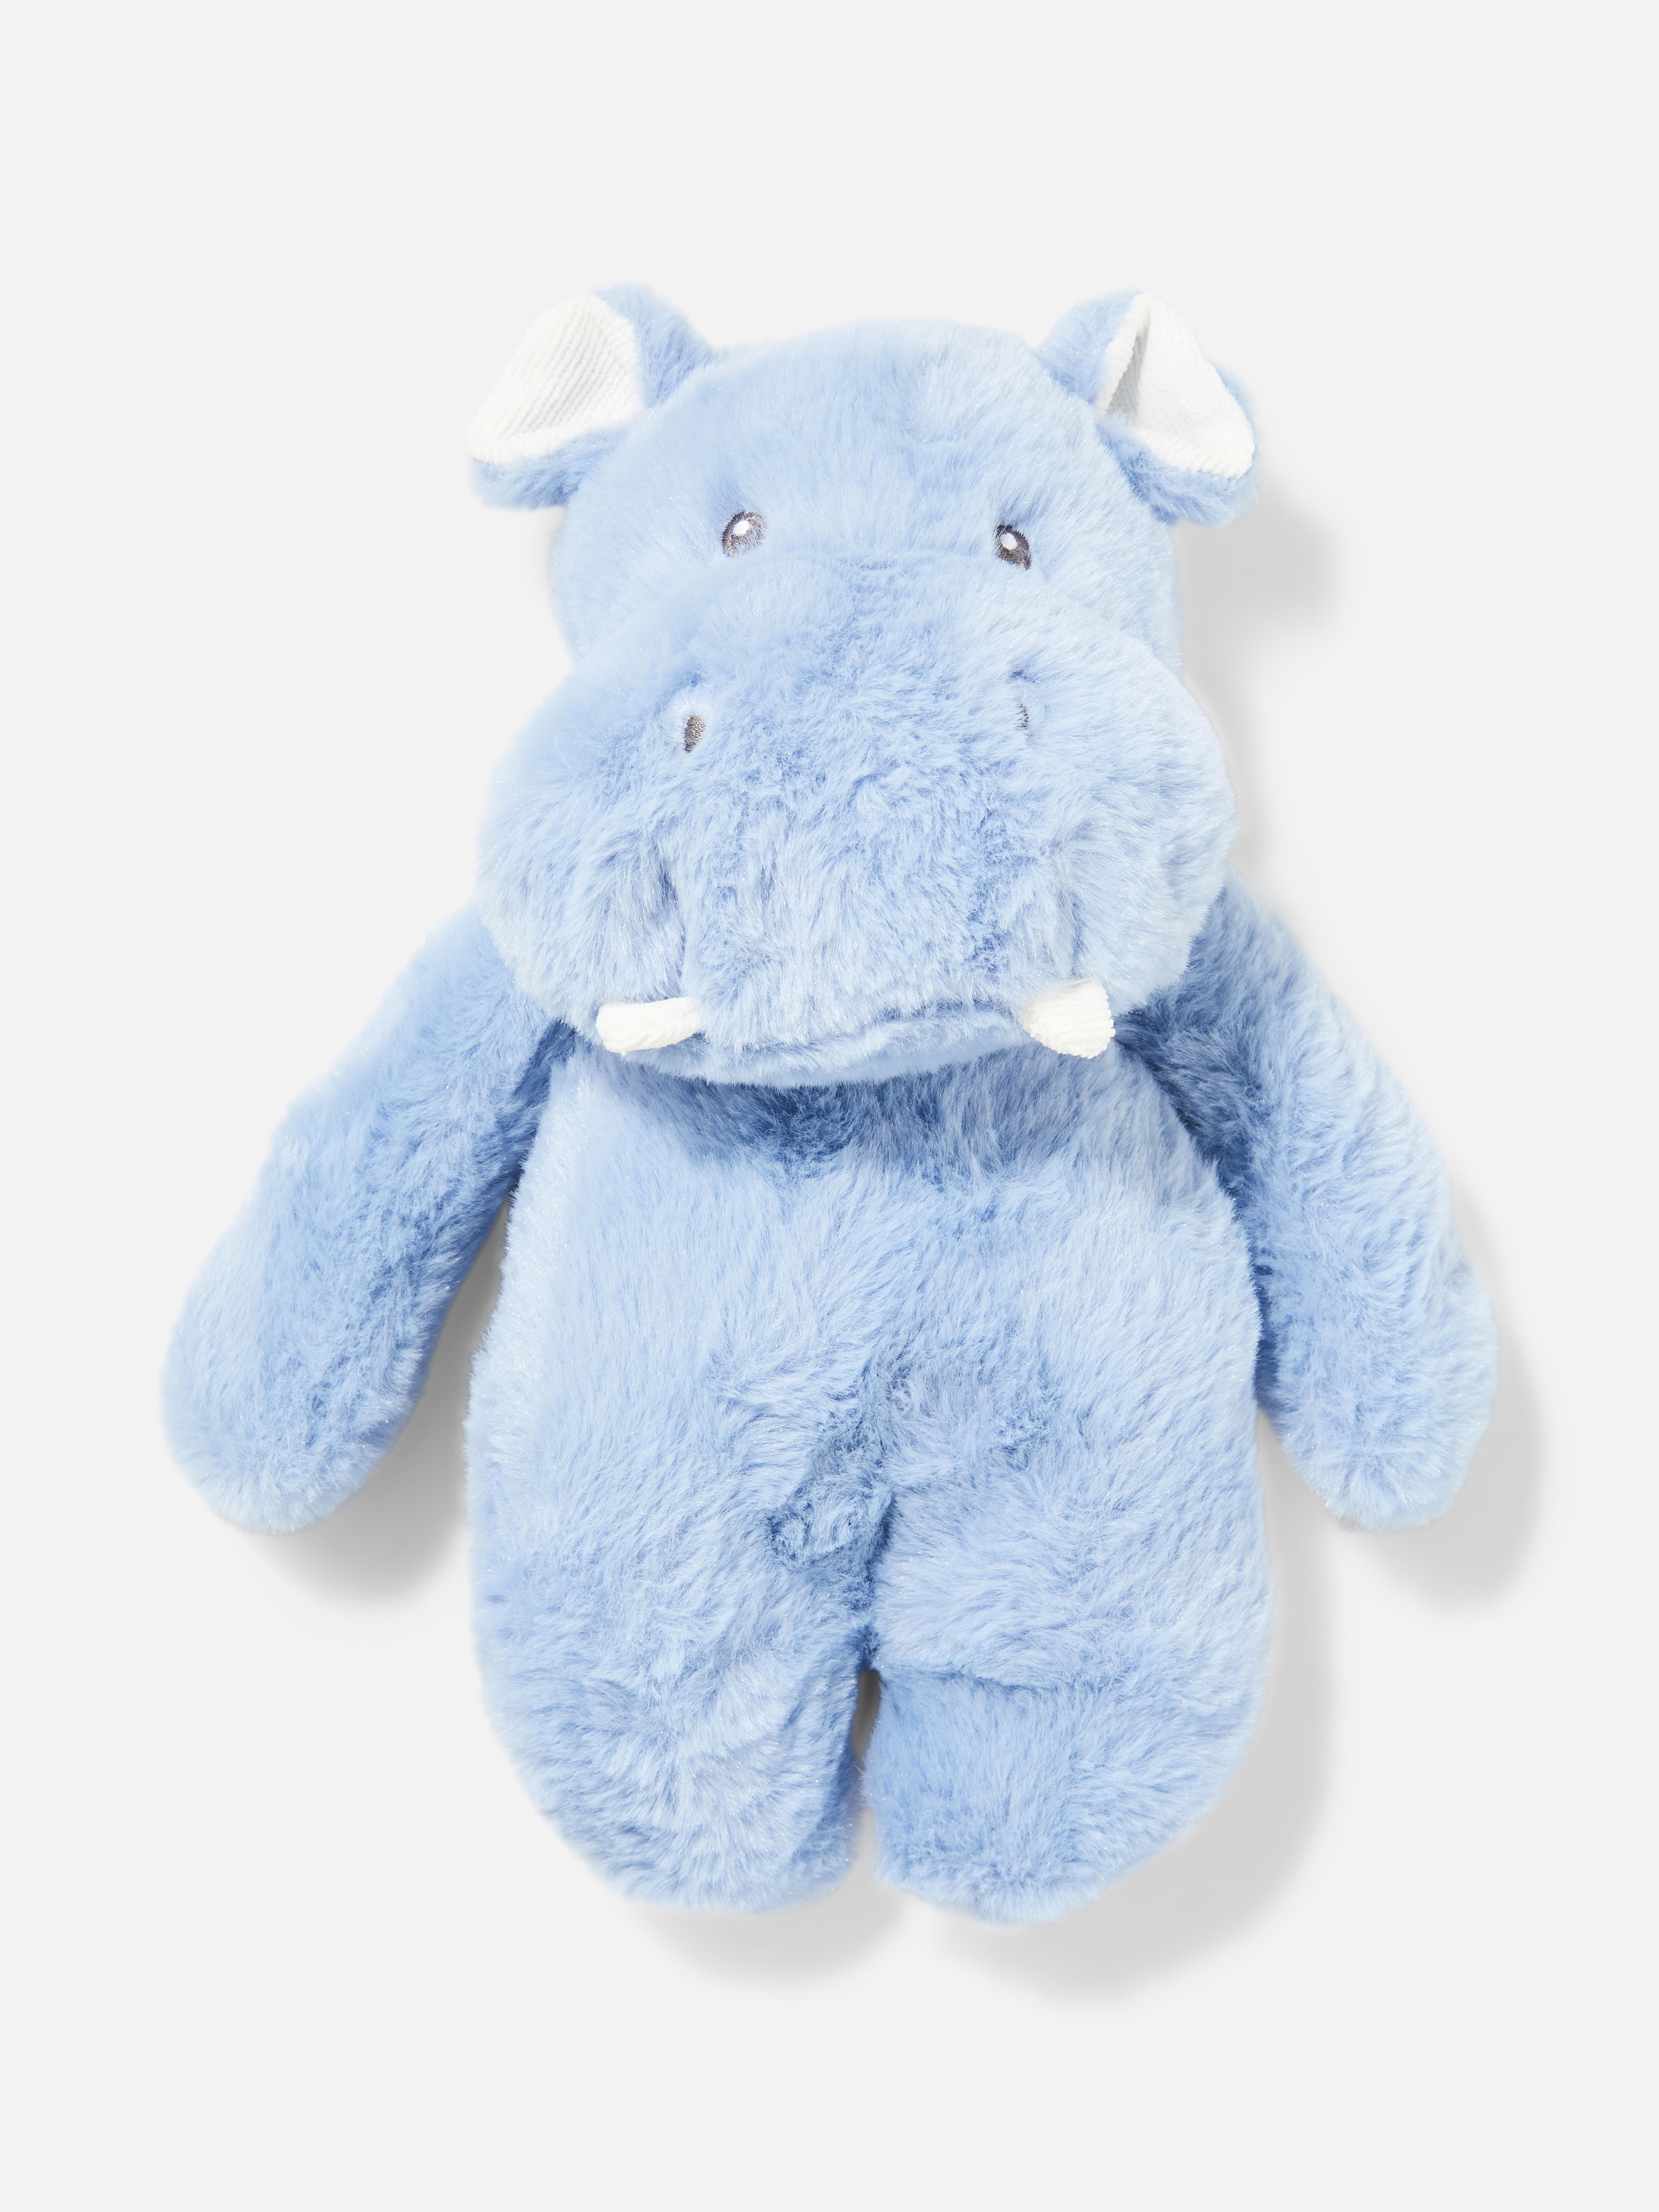 Hippo Plush Toy